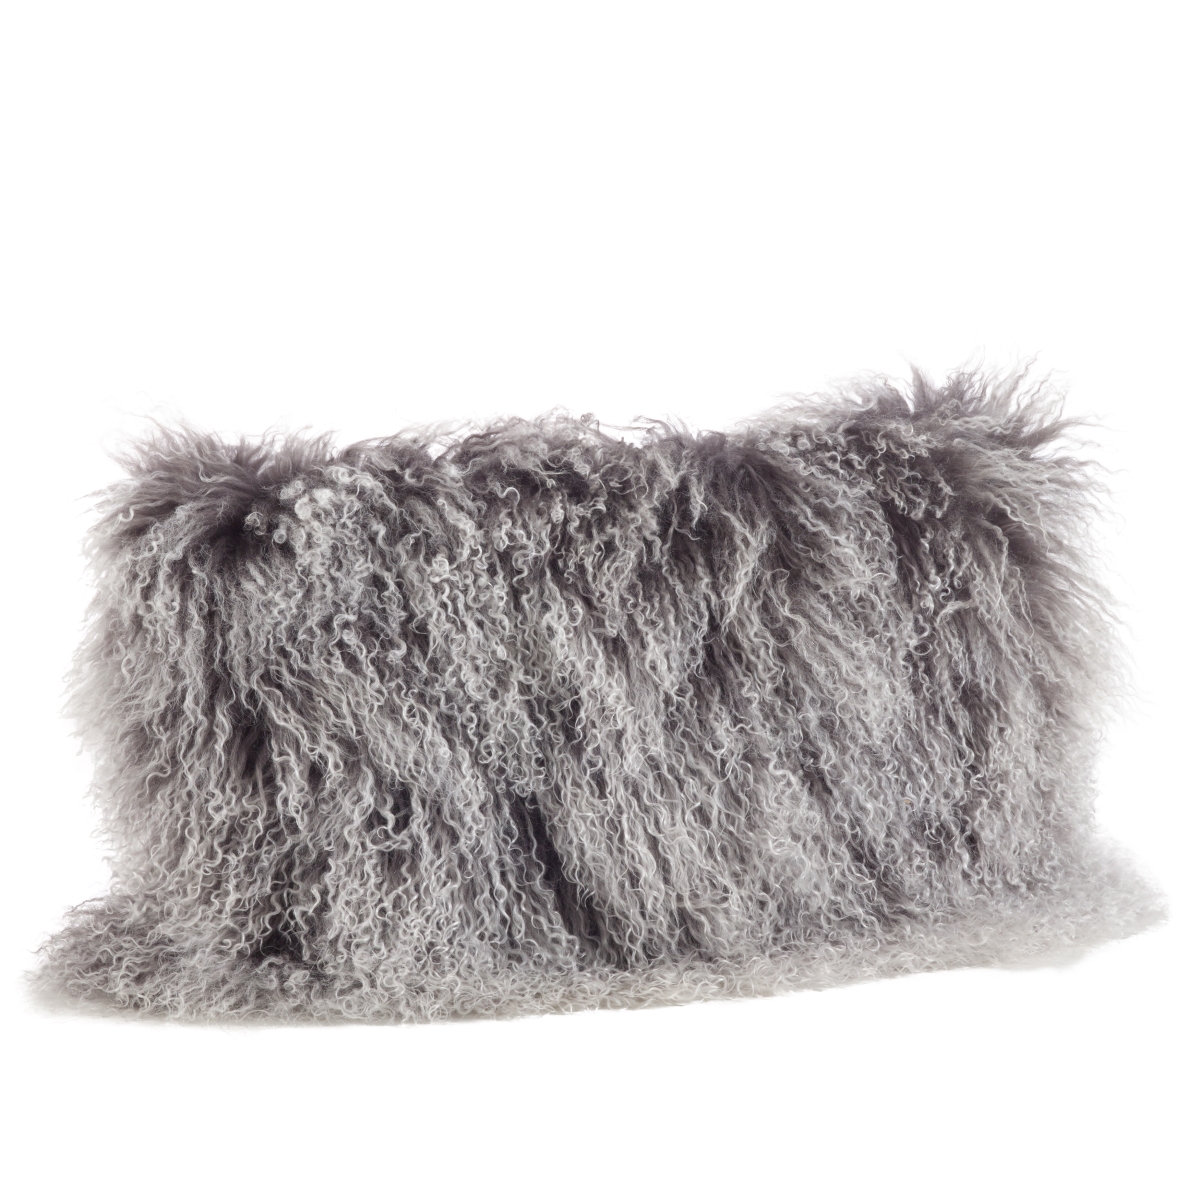 3564.ck1220b 12 X 20 In. Wool Mongolian Lamb Fur Throw Pillow - Charcoal